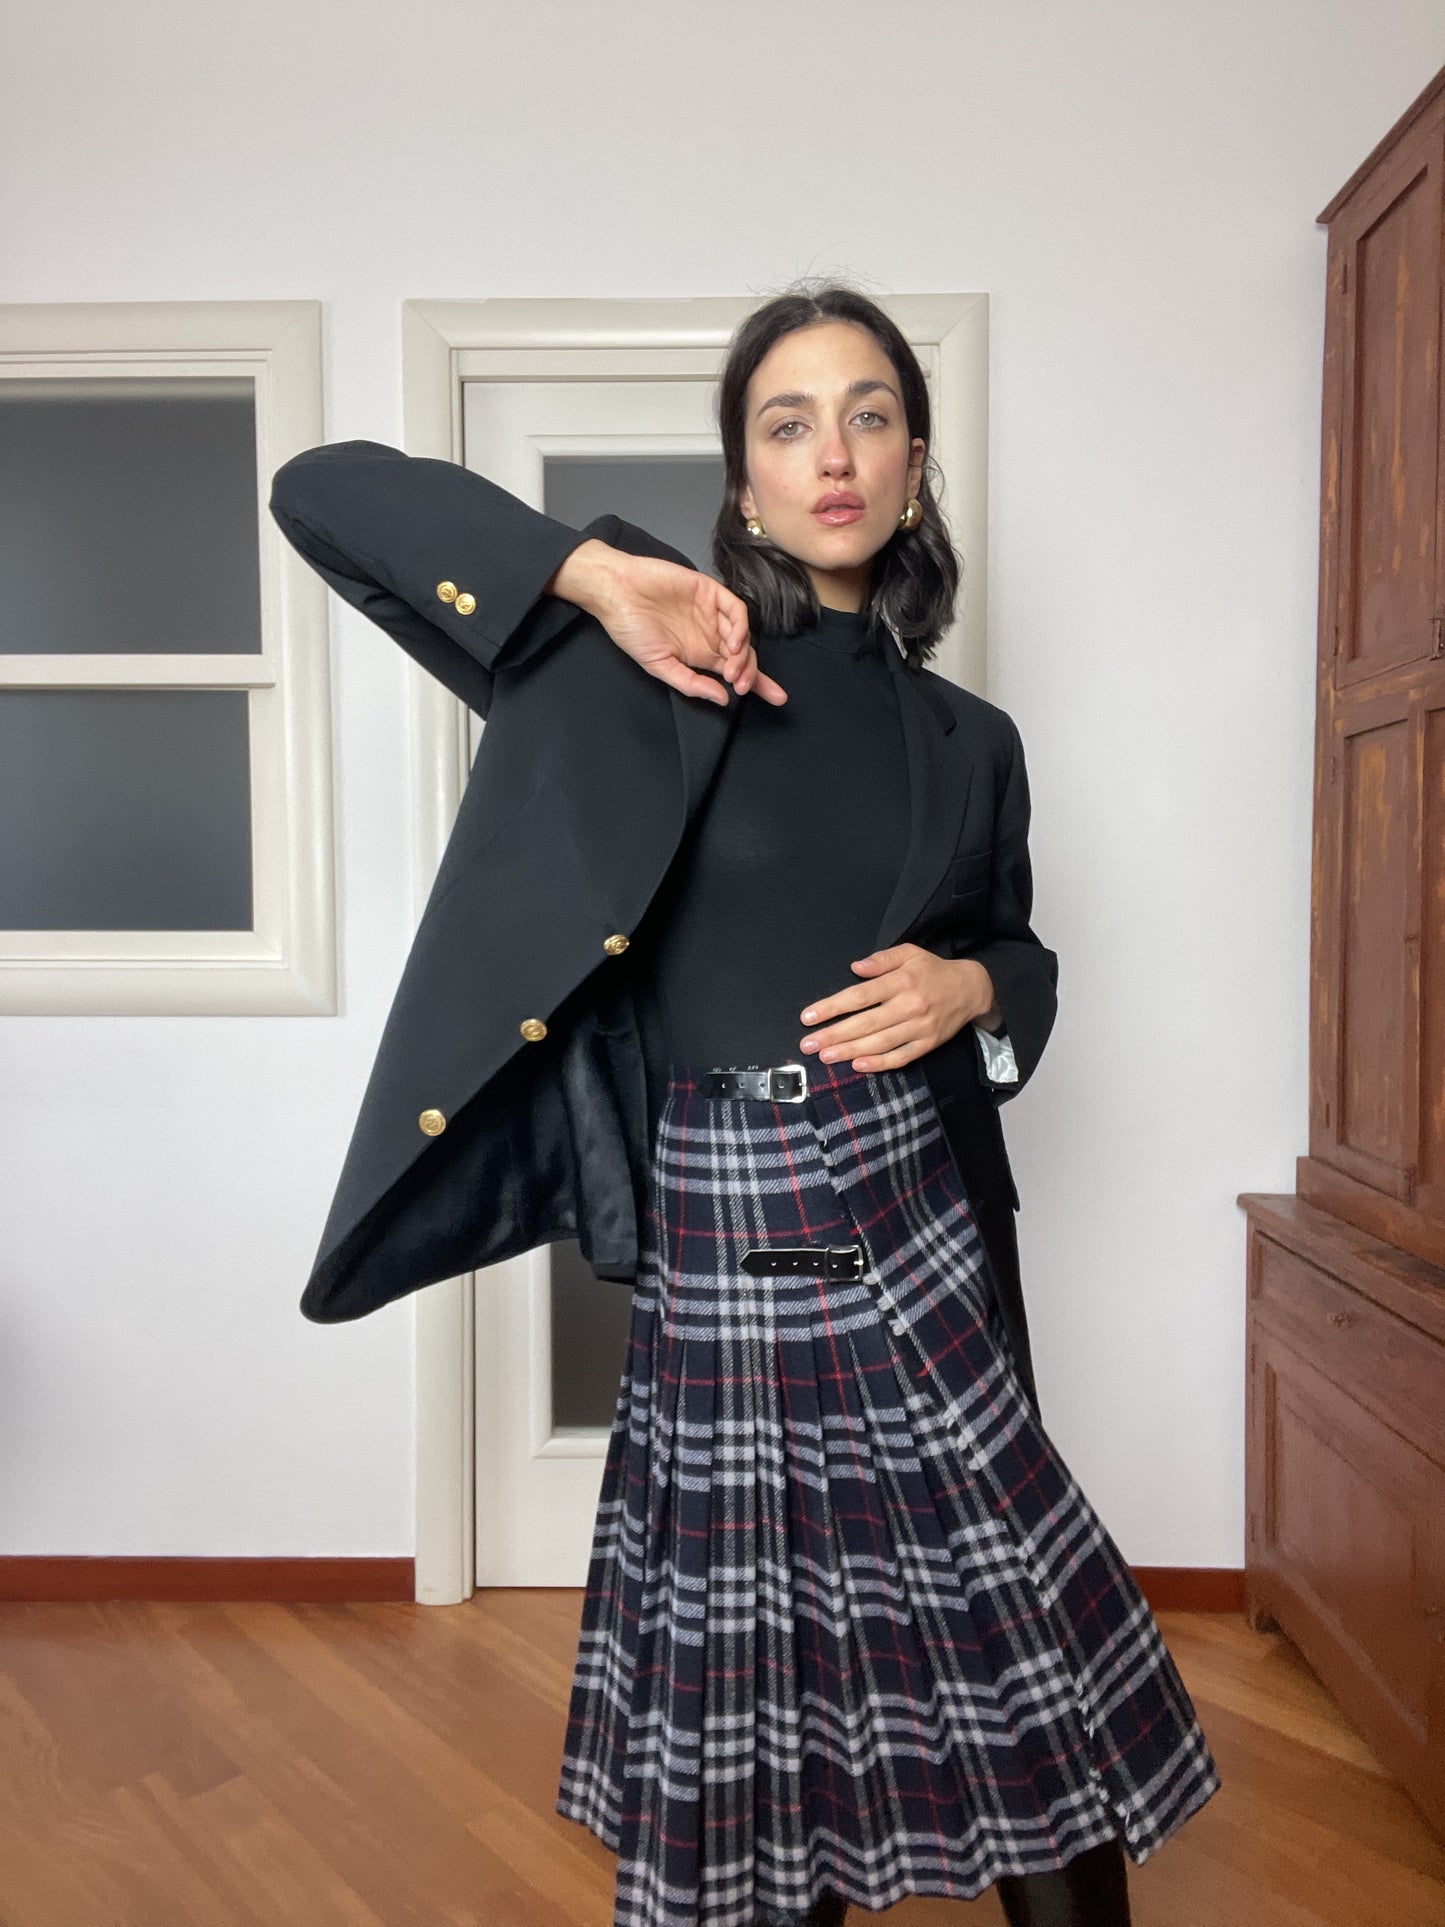 The Burberry wool tartan skirt